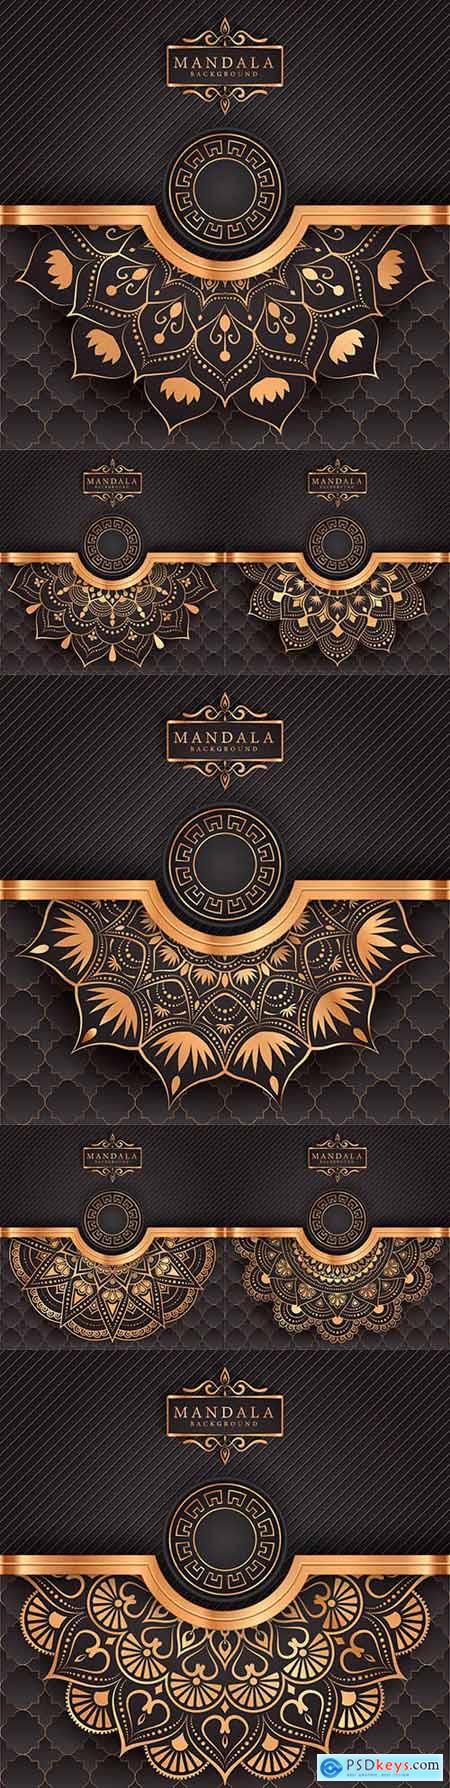 Luxury mandala decorative ethnic background element